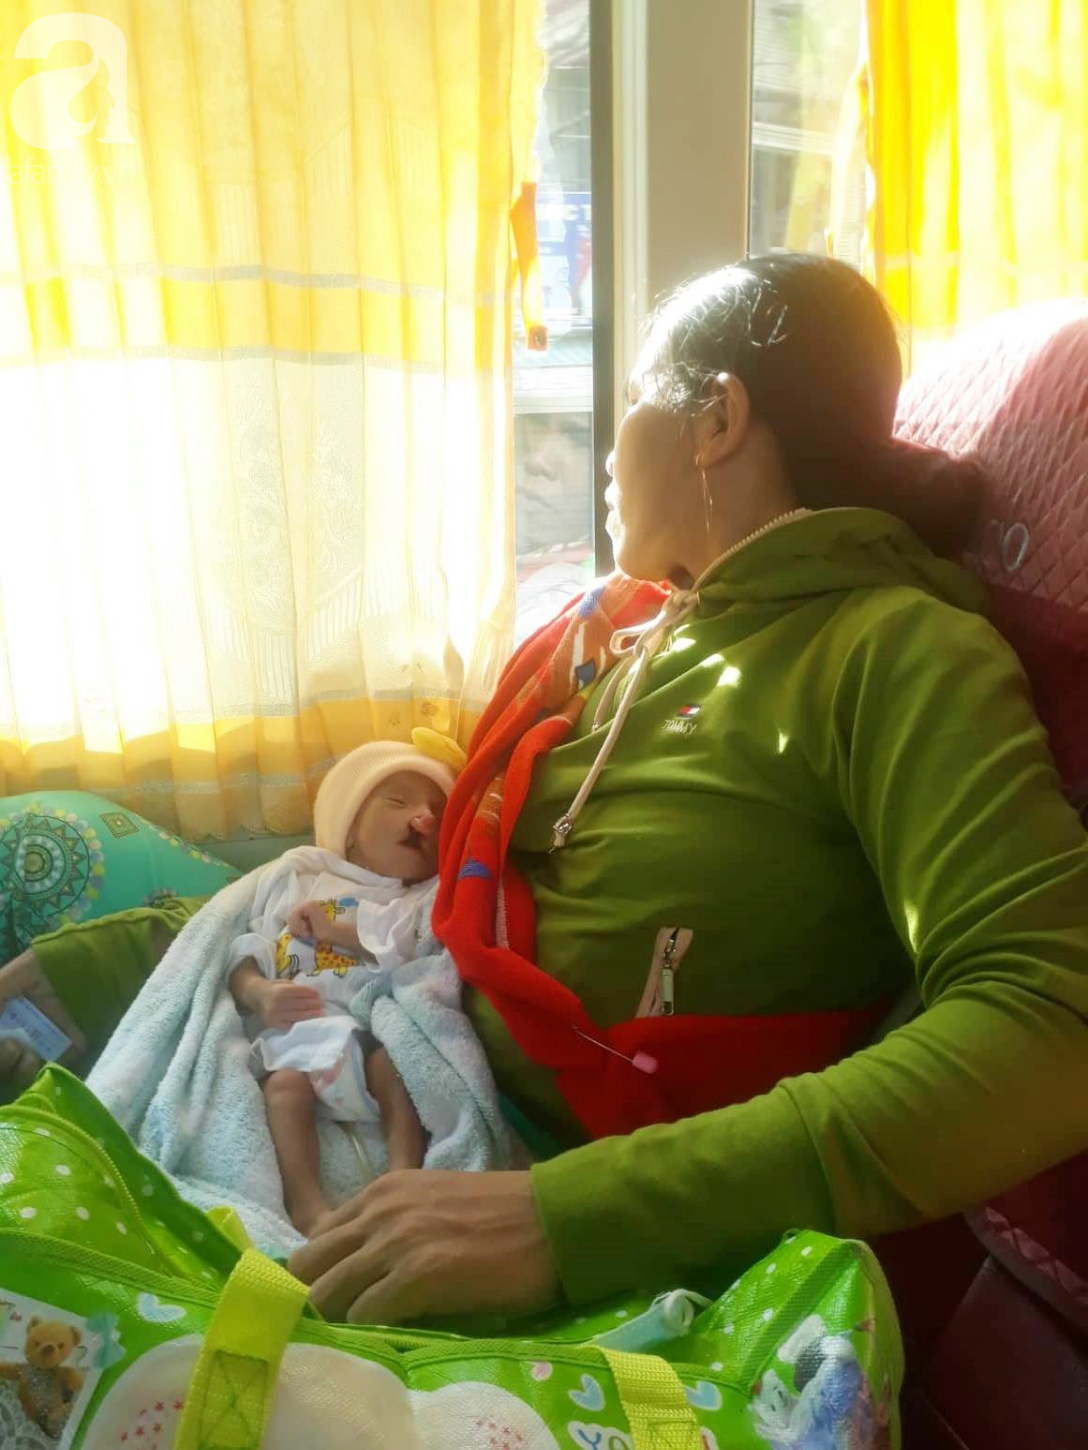 Xót cảnh bé trai 2 tháng tuổi bị suy dinh dưỡng, nặng chỉ 2 ký mà mẹ nghèo không đủ tiền để đưa lên Sài Gòn chữa bệnh - Ảnh 2.